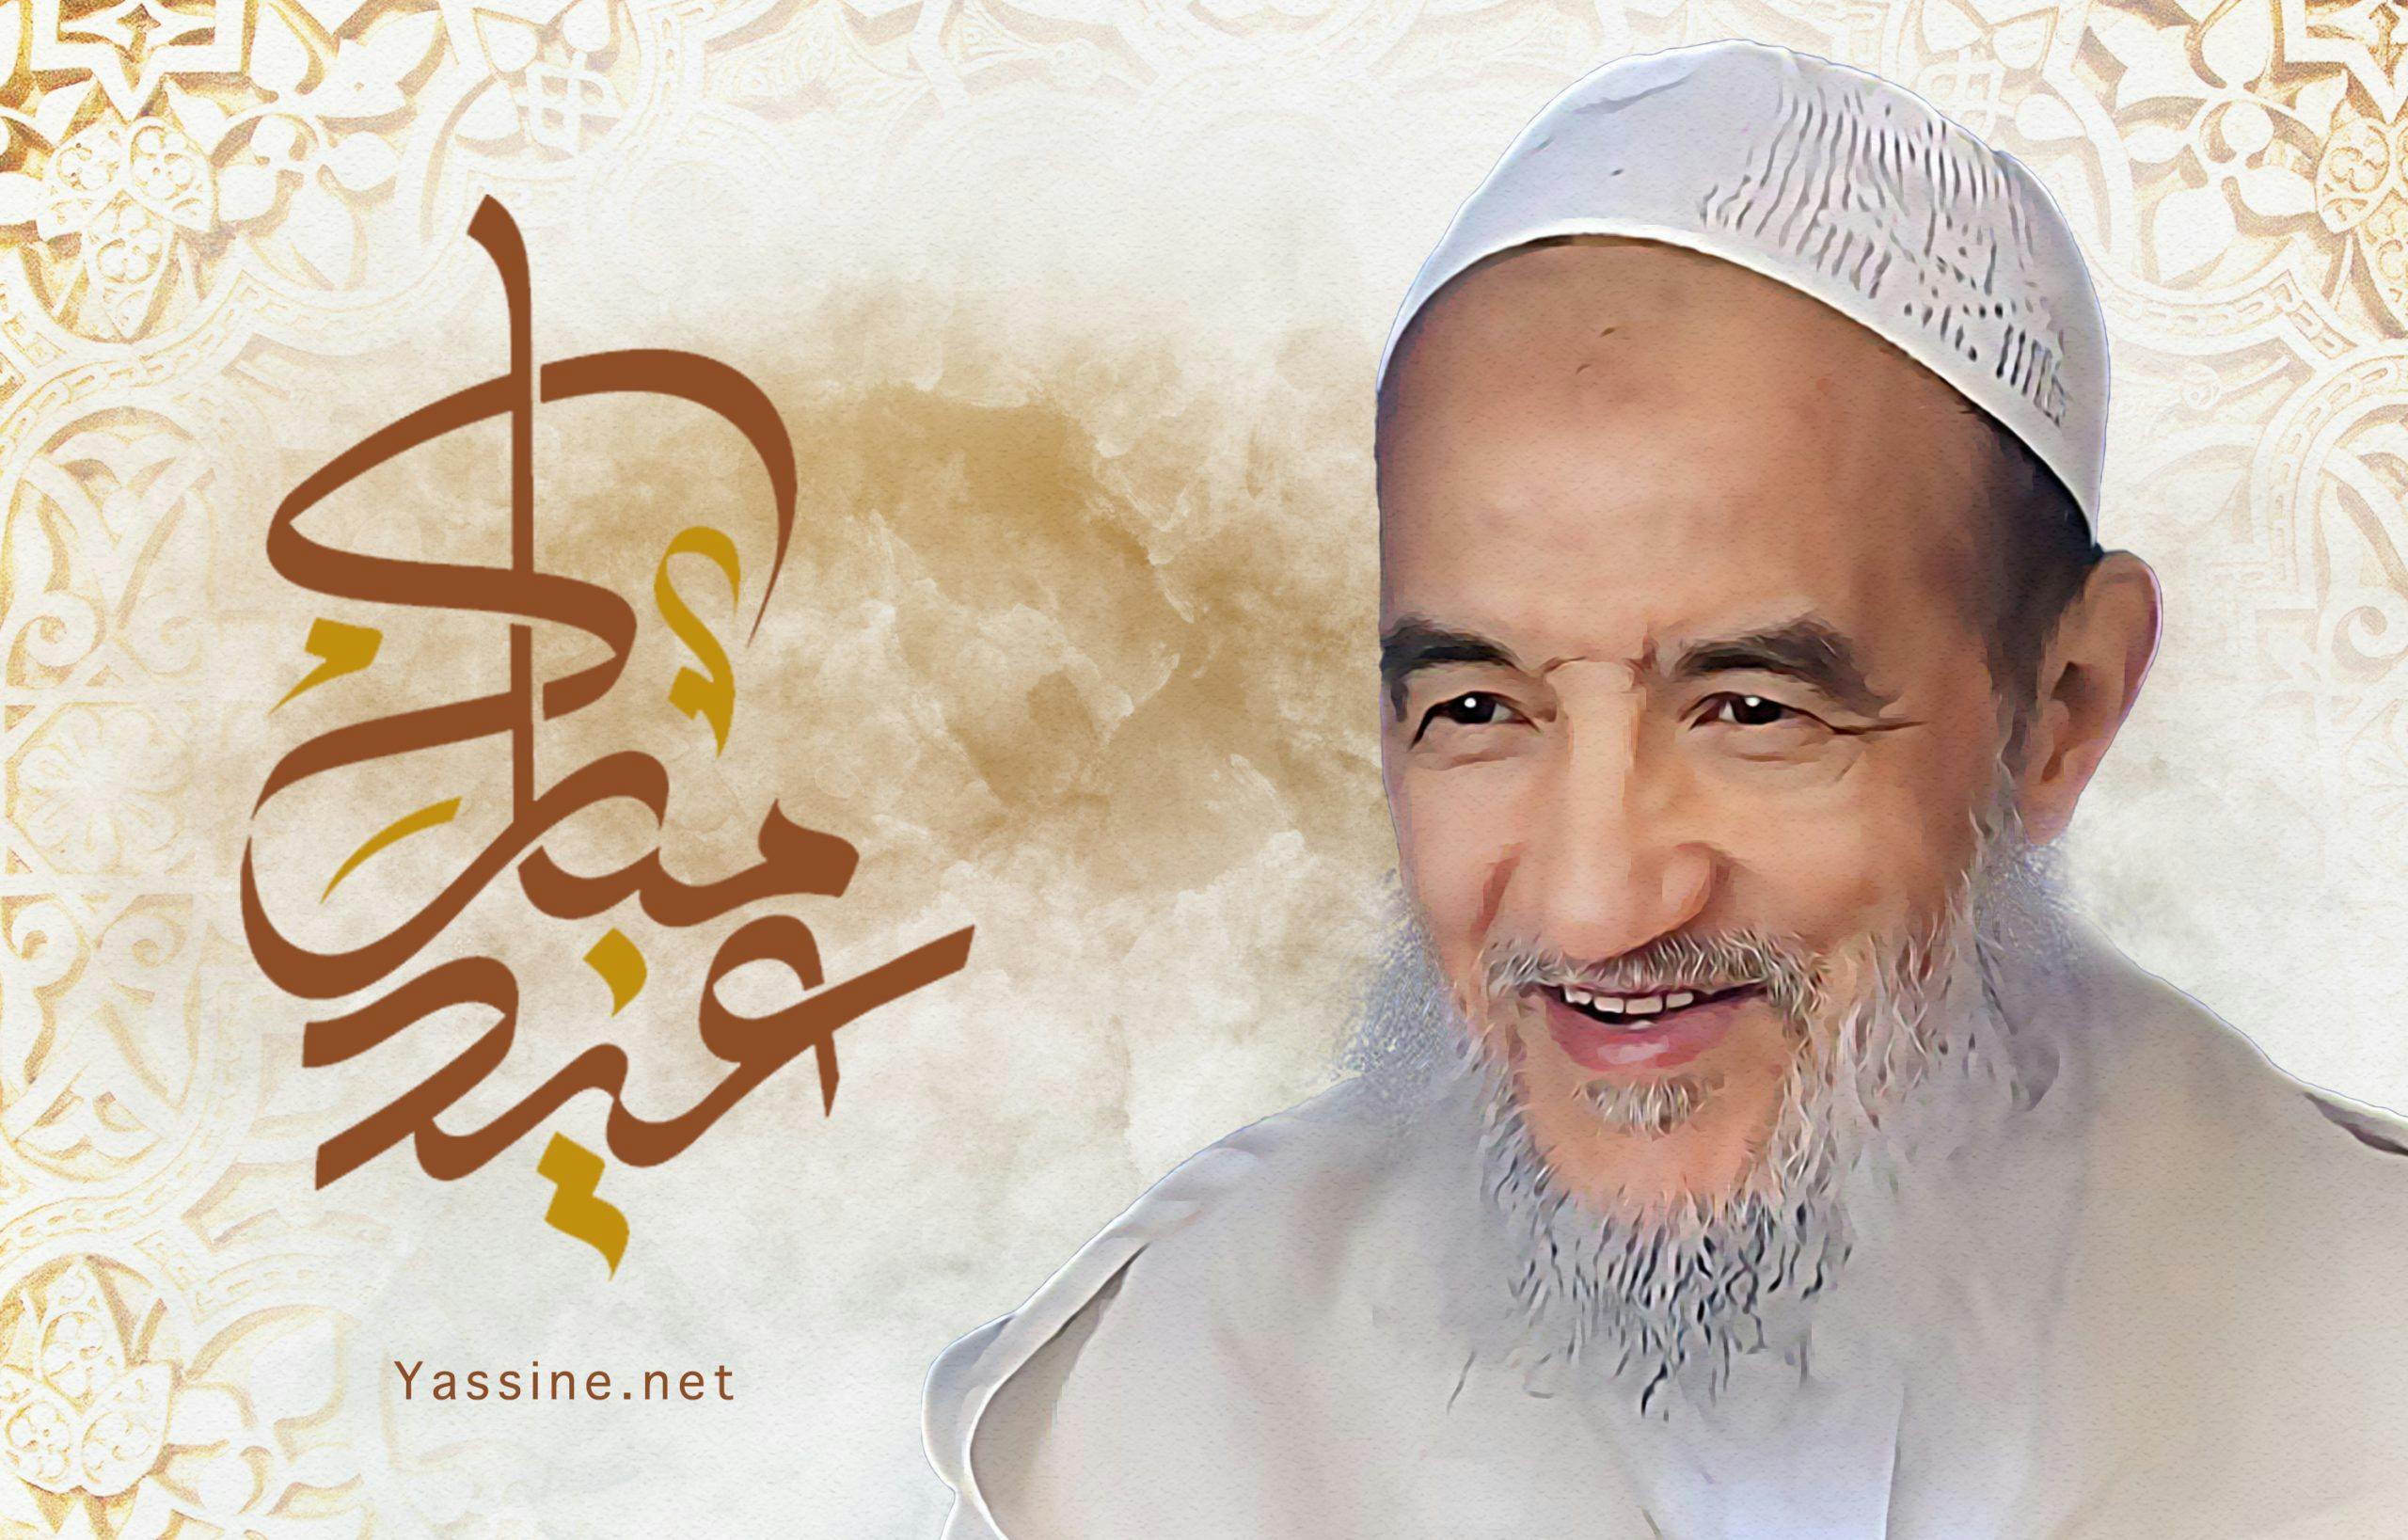 إدارة مواقع الإمام تُبارك لكم حلول عيد الفطر السعيد